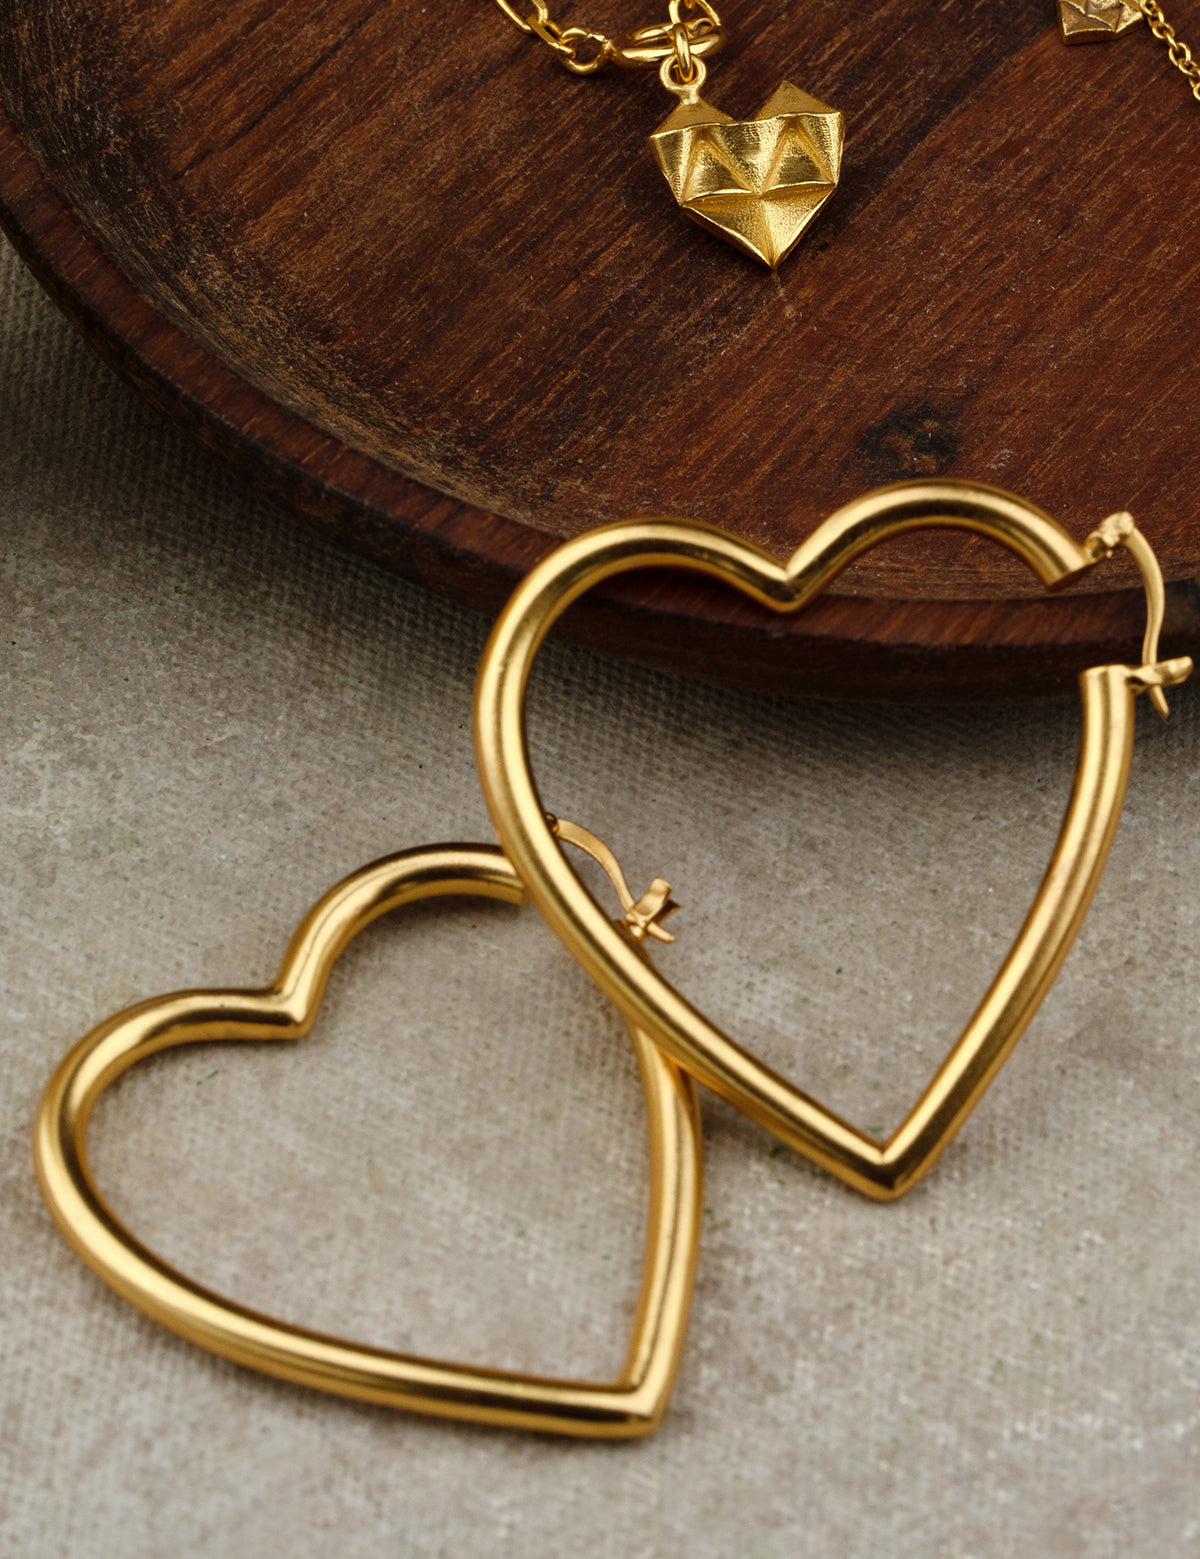 Sefa Earrings Hoop Wire 0.5 Micron Gold Plated On Brass - ZEWAR Jewelry